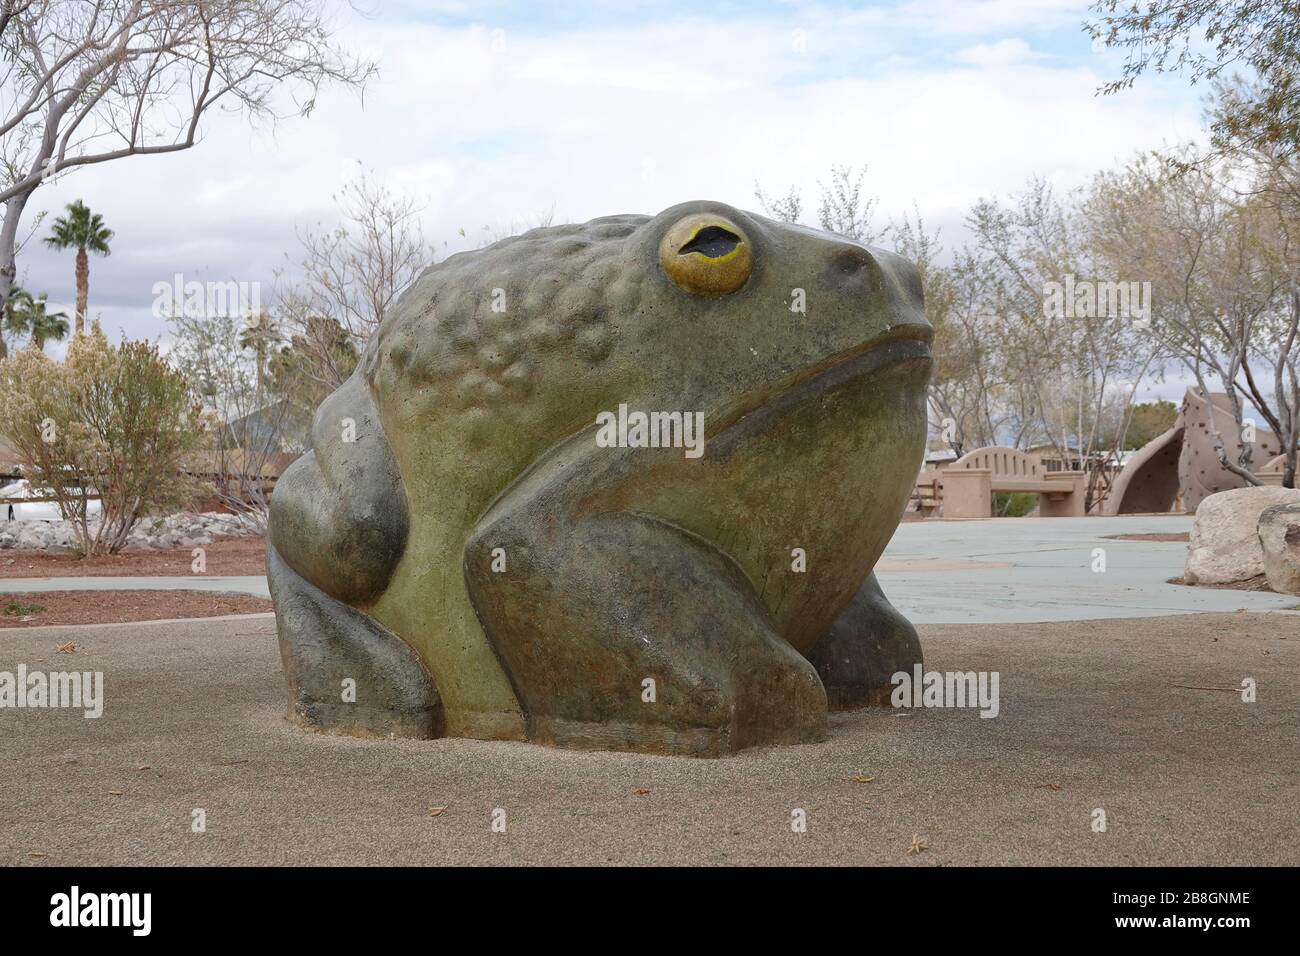 Alta 180 cm, questa statua di rana sedurrà grandi e grandi e non mancherà  di stupire di più i tuoi ospiti.